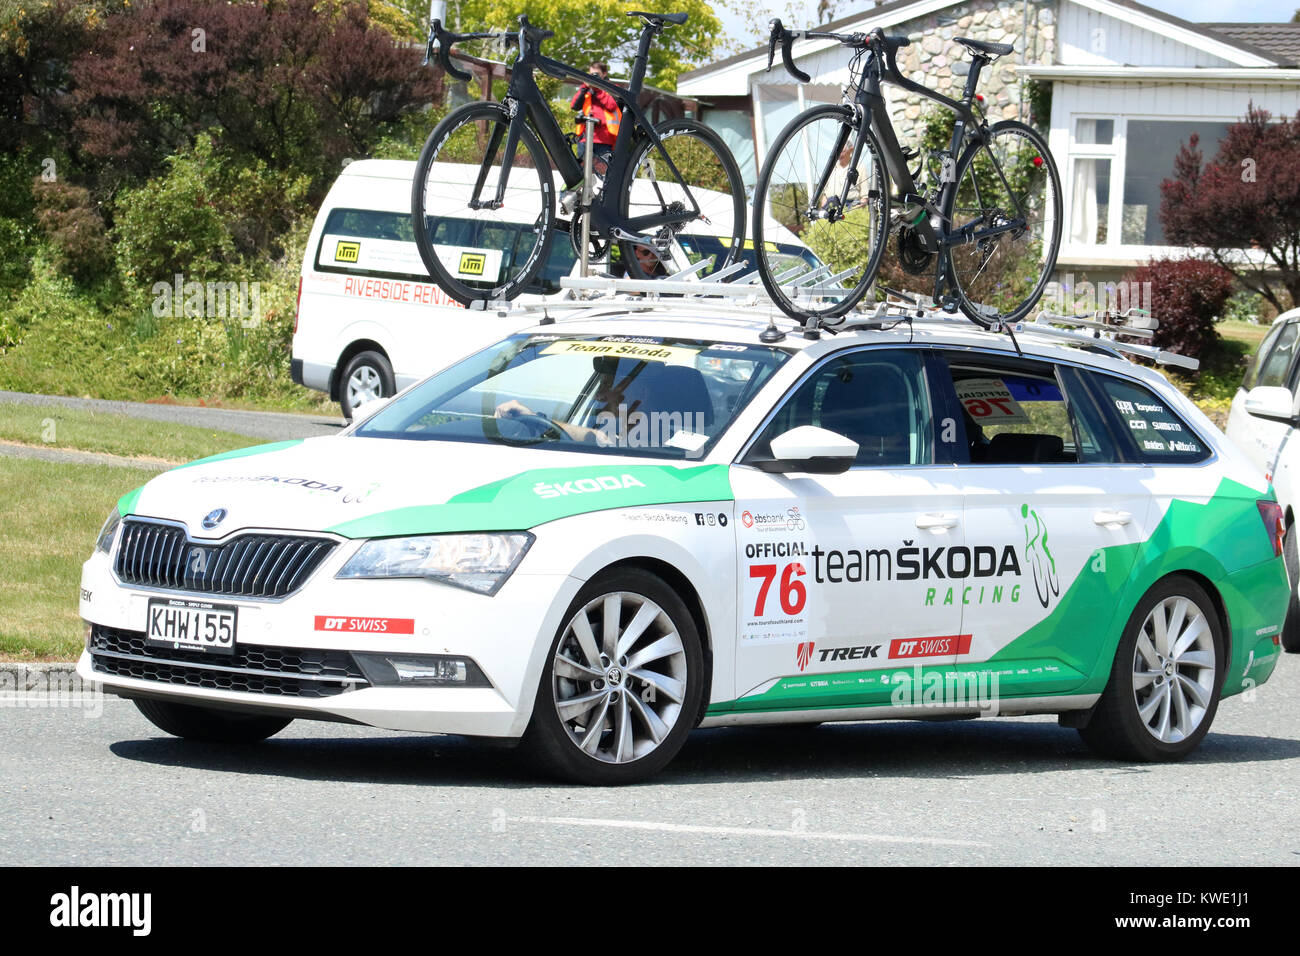 Tour del Southland cycle race passando attraverso Manapouri nell Isola del Sud, Nuova Zelanda che mostra un team Skoda auto di supporto dopo la gara. Foto Stock